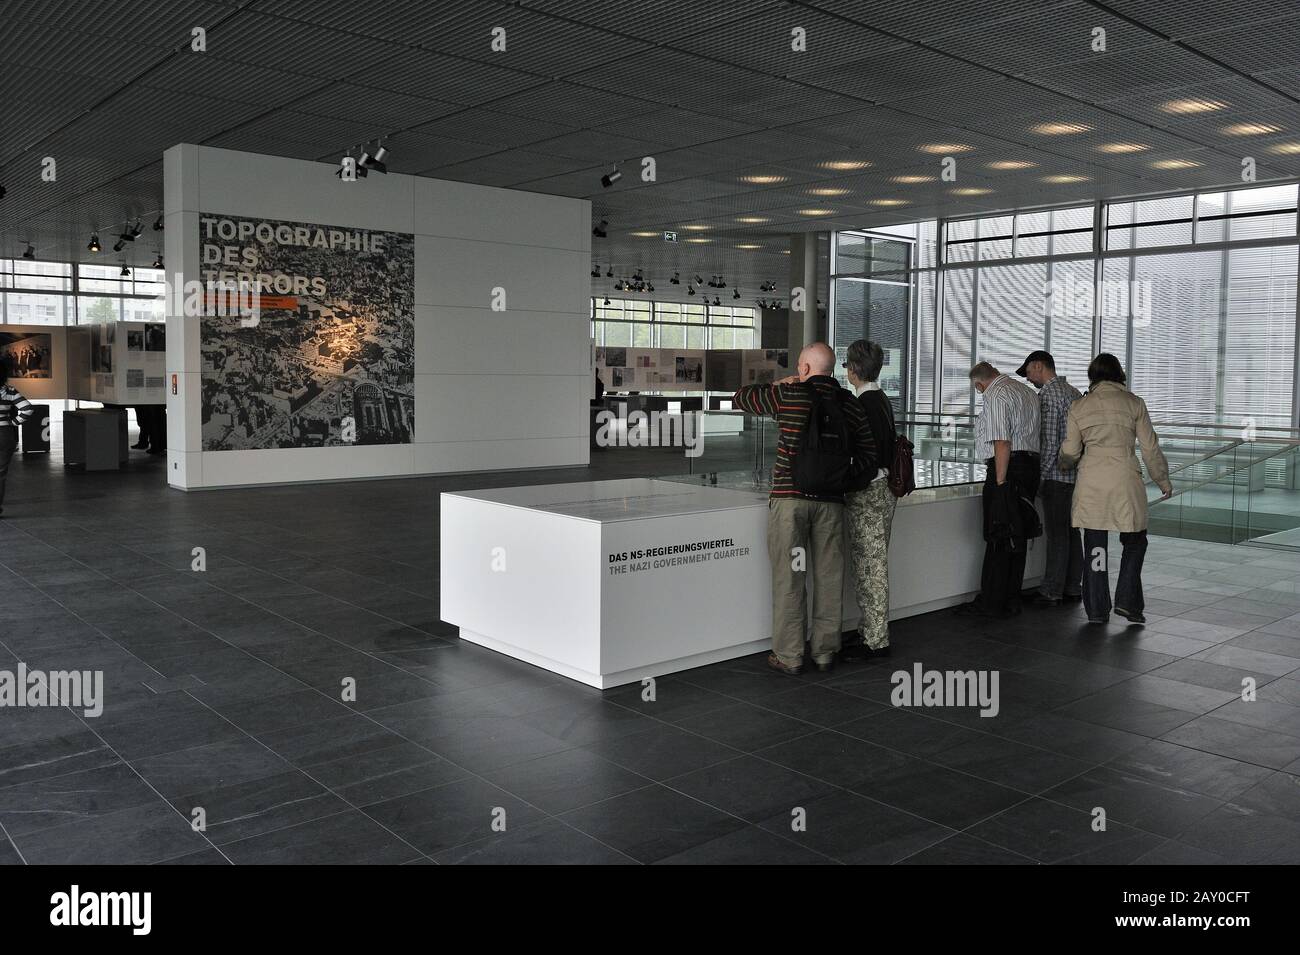 Nuevo diseño interior de la exposición Topography of Terror en el sitio de la antigua sede de las SS, Berlín, Alemania, Europ Foto de stock